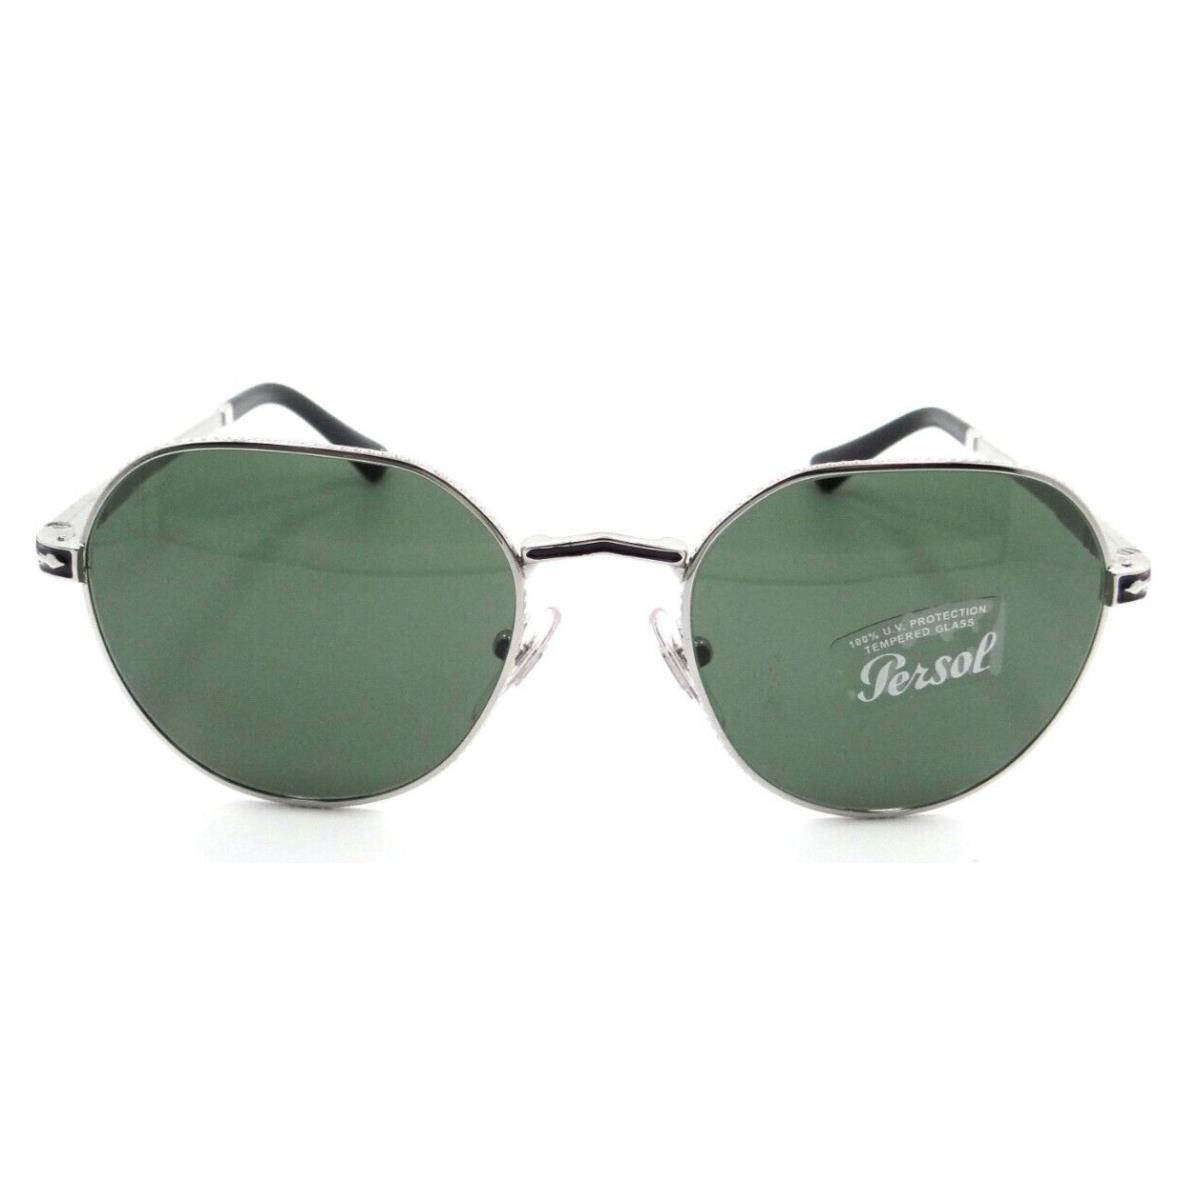 Persol Sunglasses PO 2486S 1113/31 51-19-145 Silver - Black / Green Italy